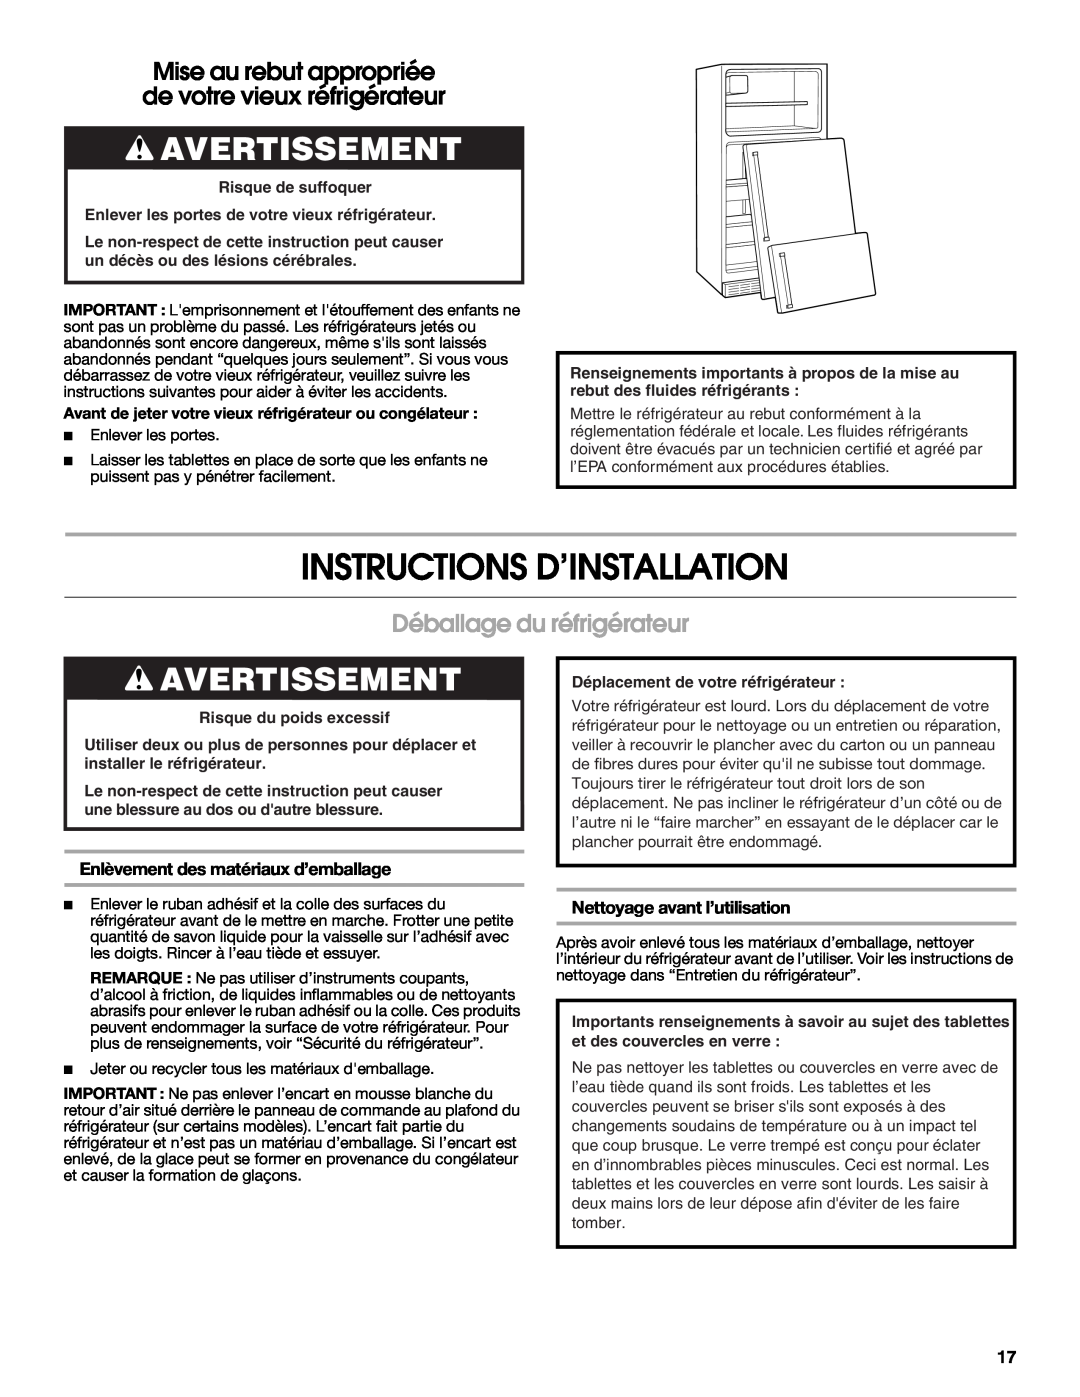 Whirlpool W10726840A Instructions D’Installation, Avertissement, Déballage du réfrigérateur, Nettoyage avant l’utilisation 